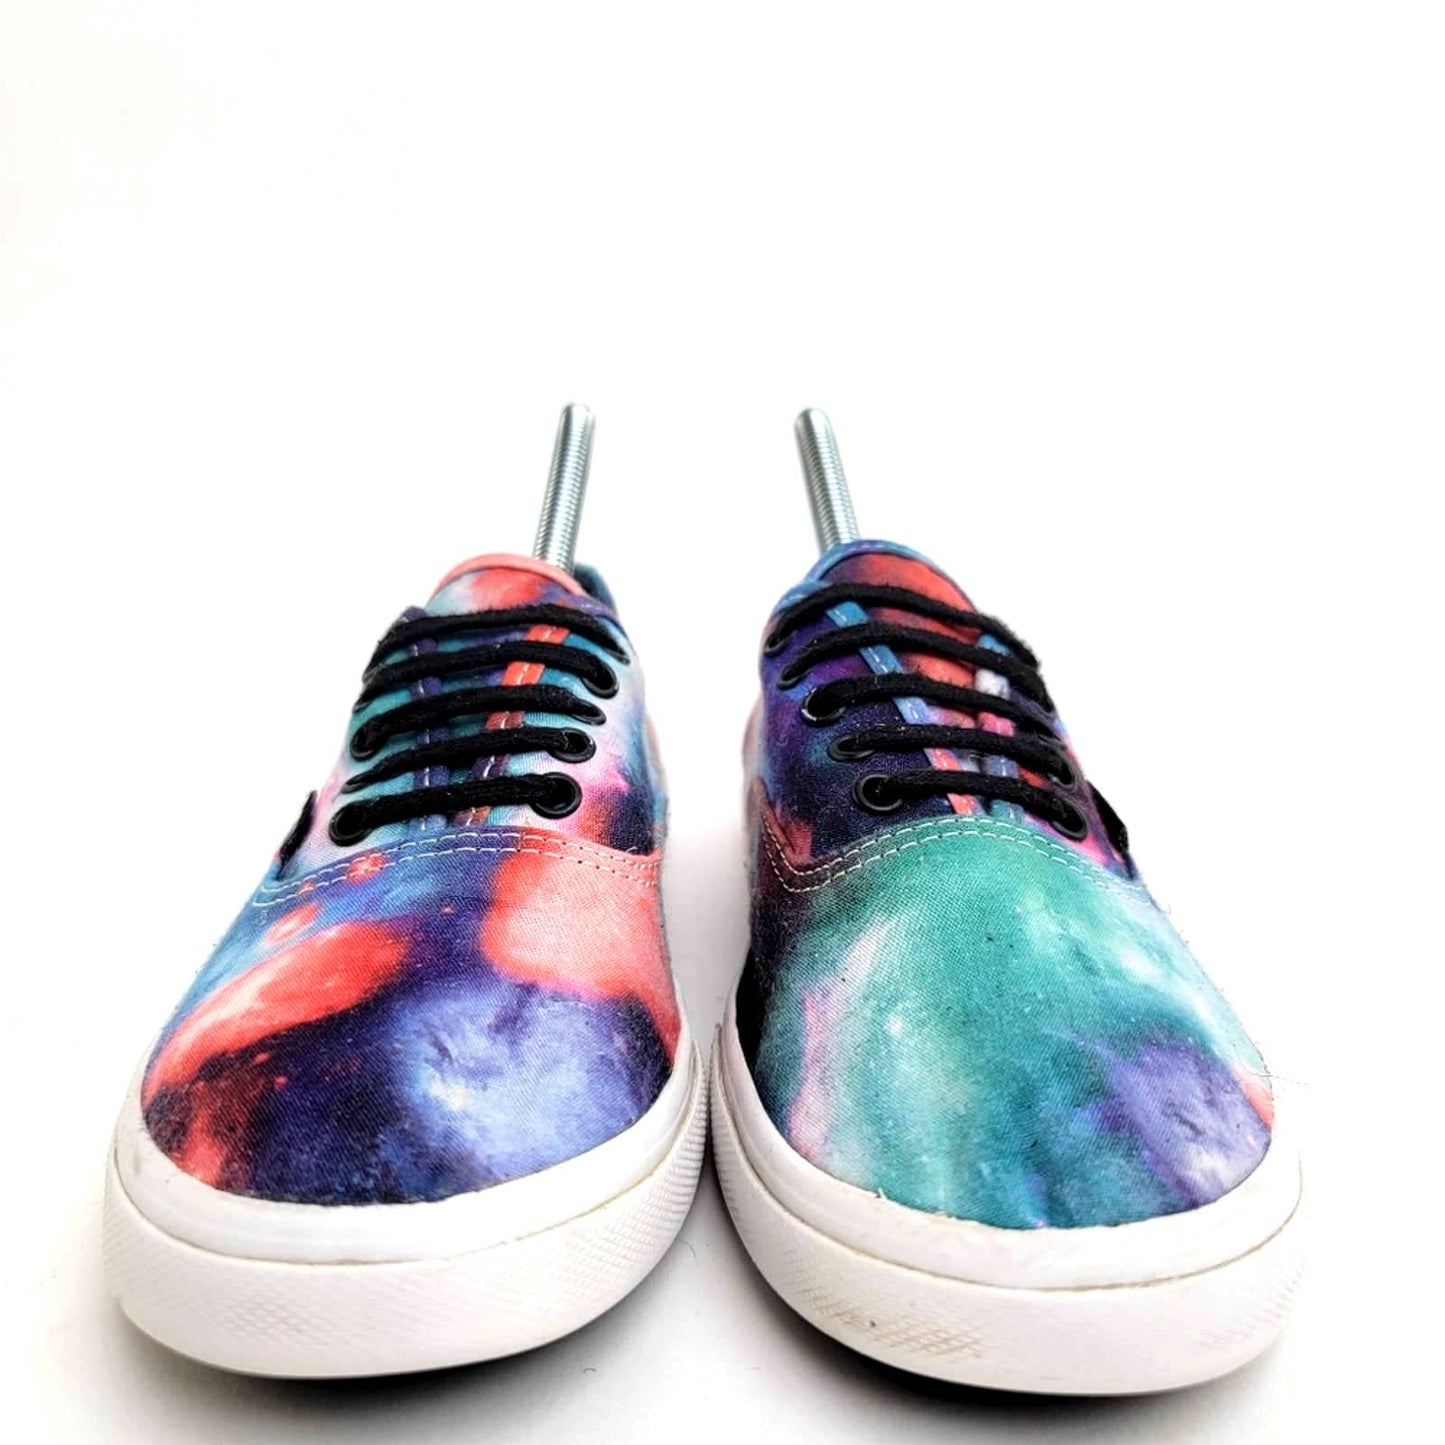 VANS Lo Pro Galaxy Cosmic Space Canvas Sneakers - 8.5